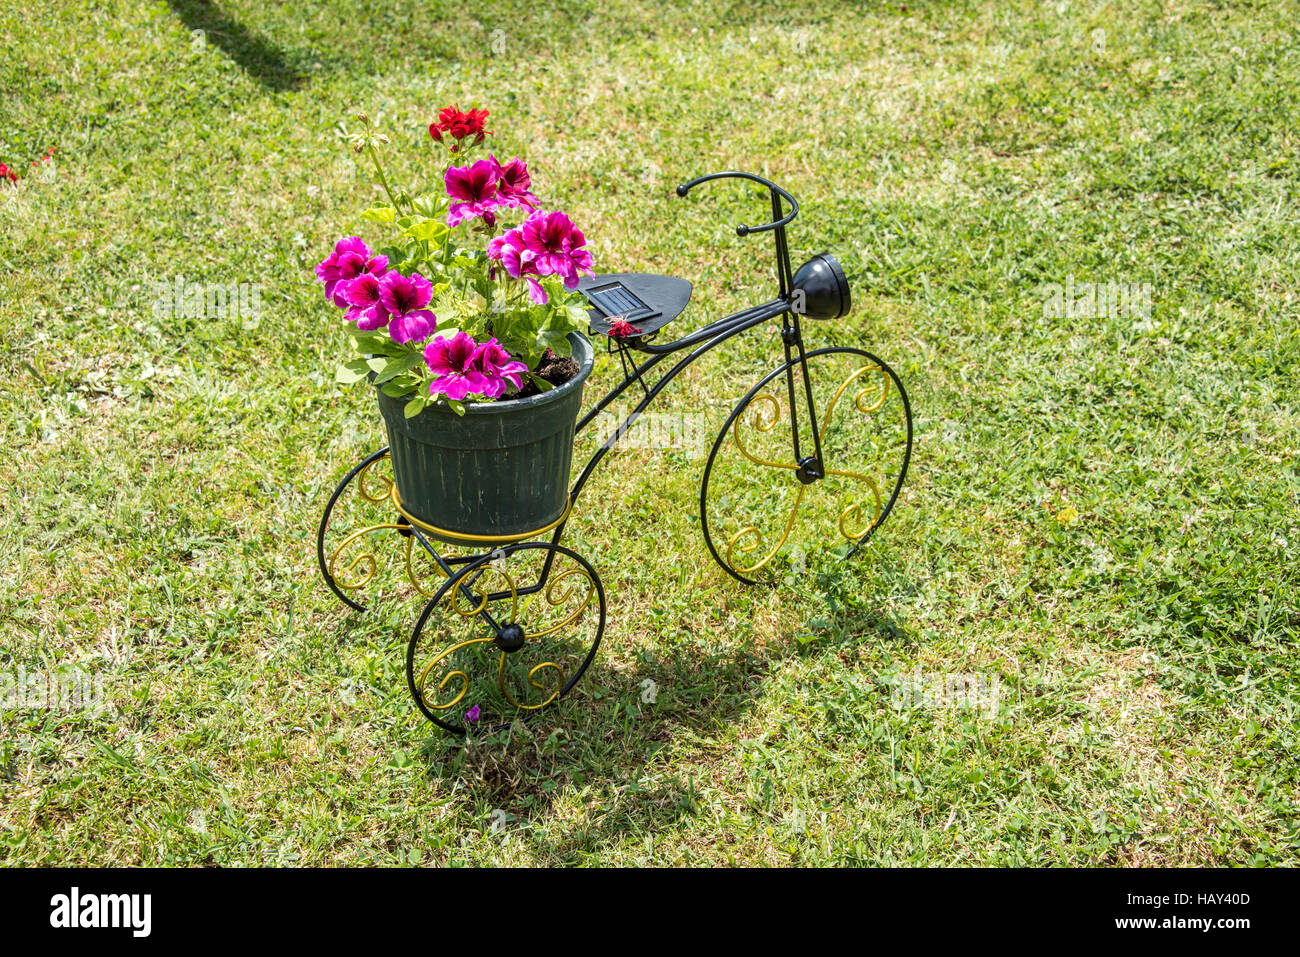 Garten im Hinterhof mit kleinen Metall Fahrrad mit 3 Rädern und Vase mit Blumen dekoriert ist Stockfoto